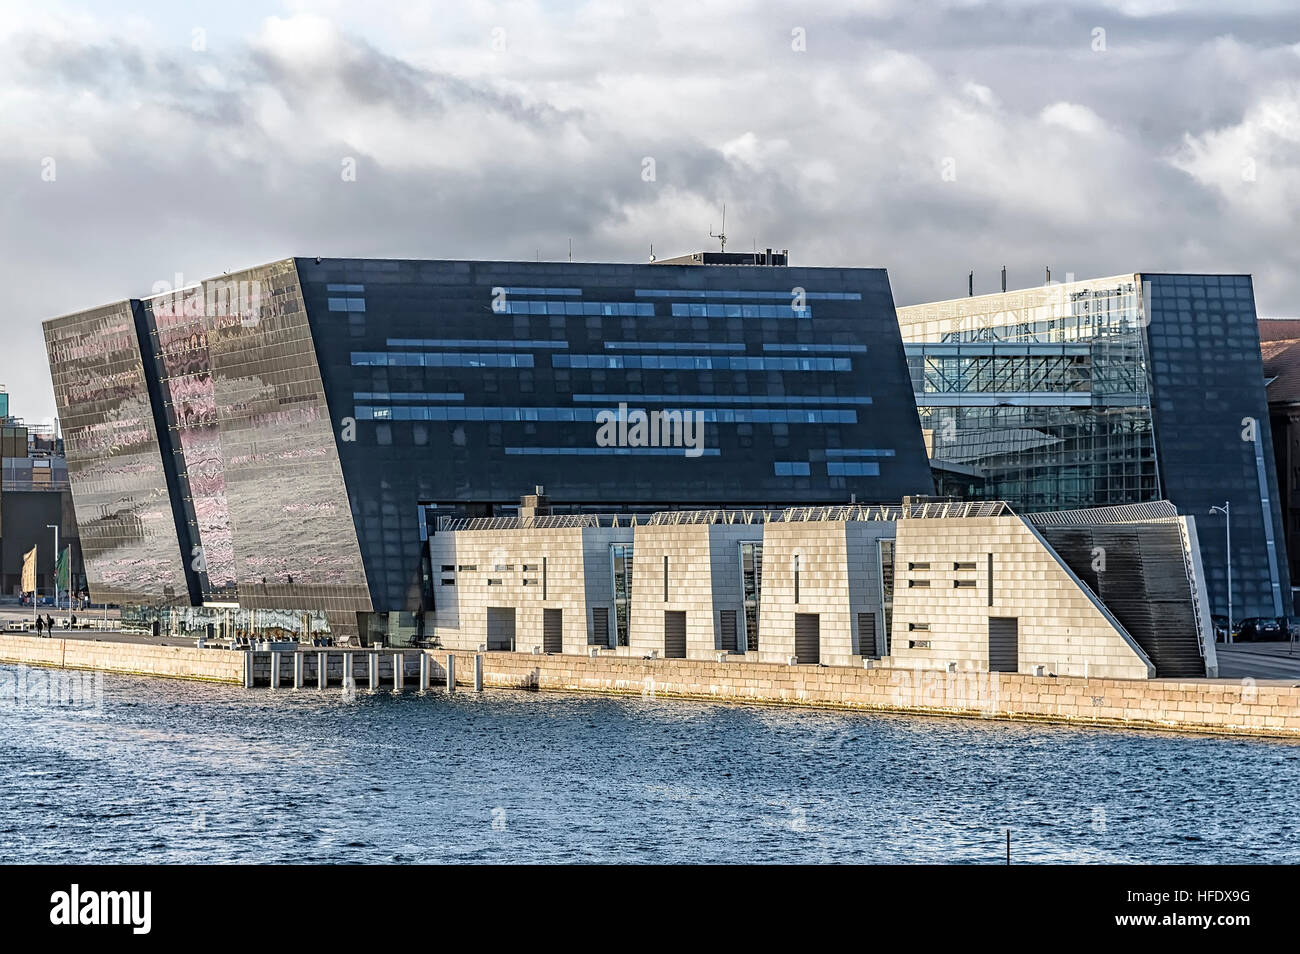 Die königliche Bibliothek Kopenhagen, Dänemark. Auch bekannt als The Black Diamond. Stockfoto